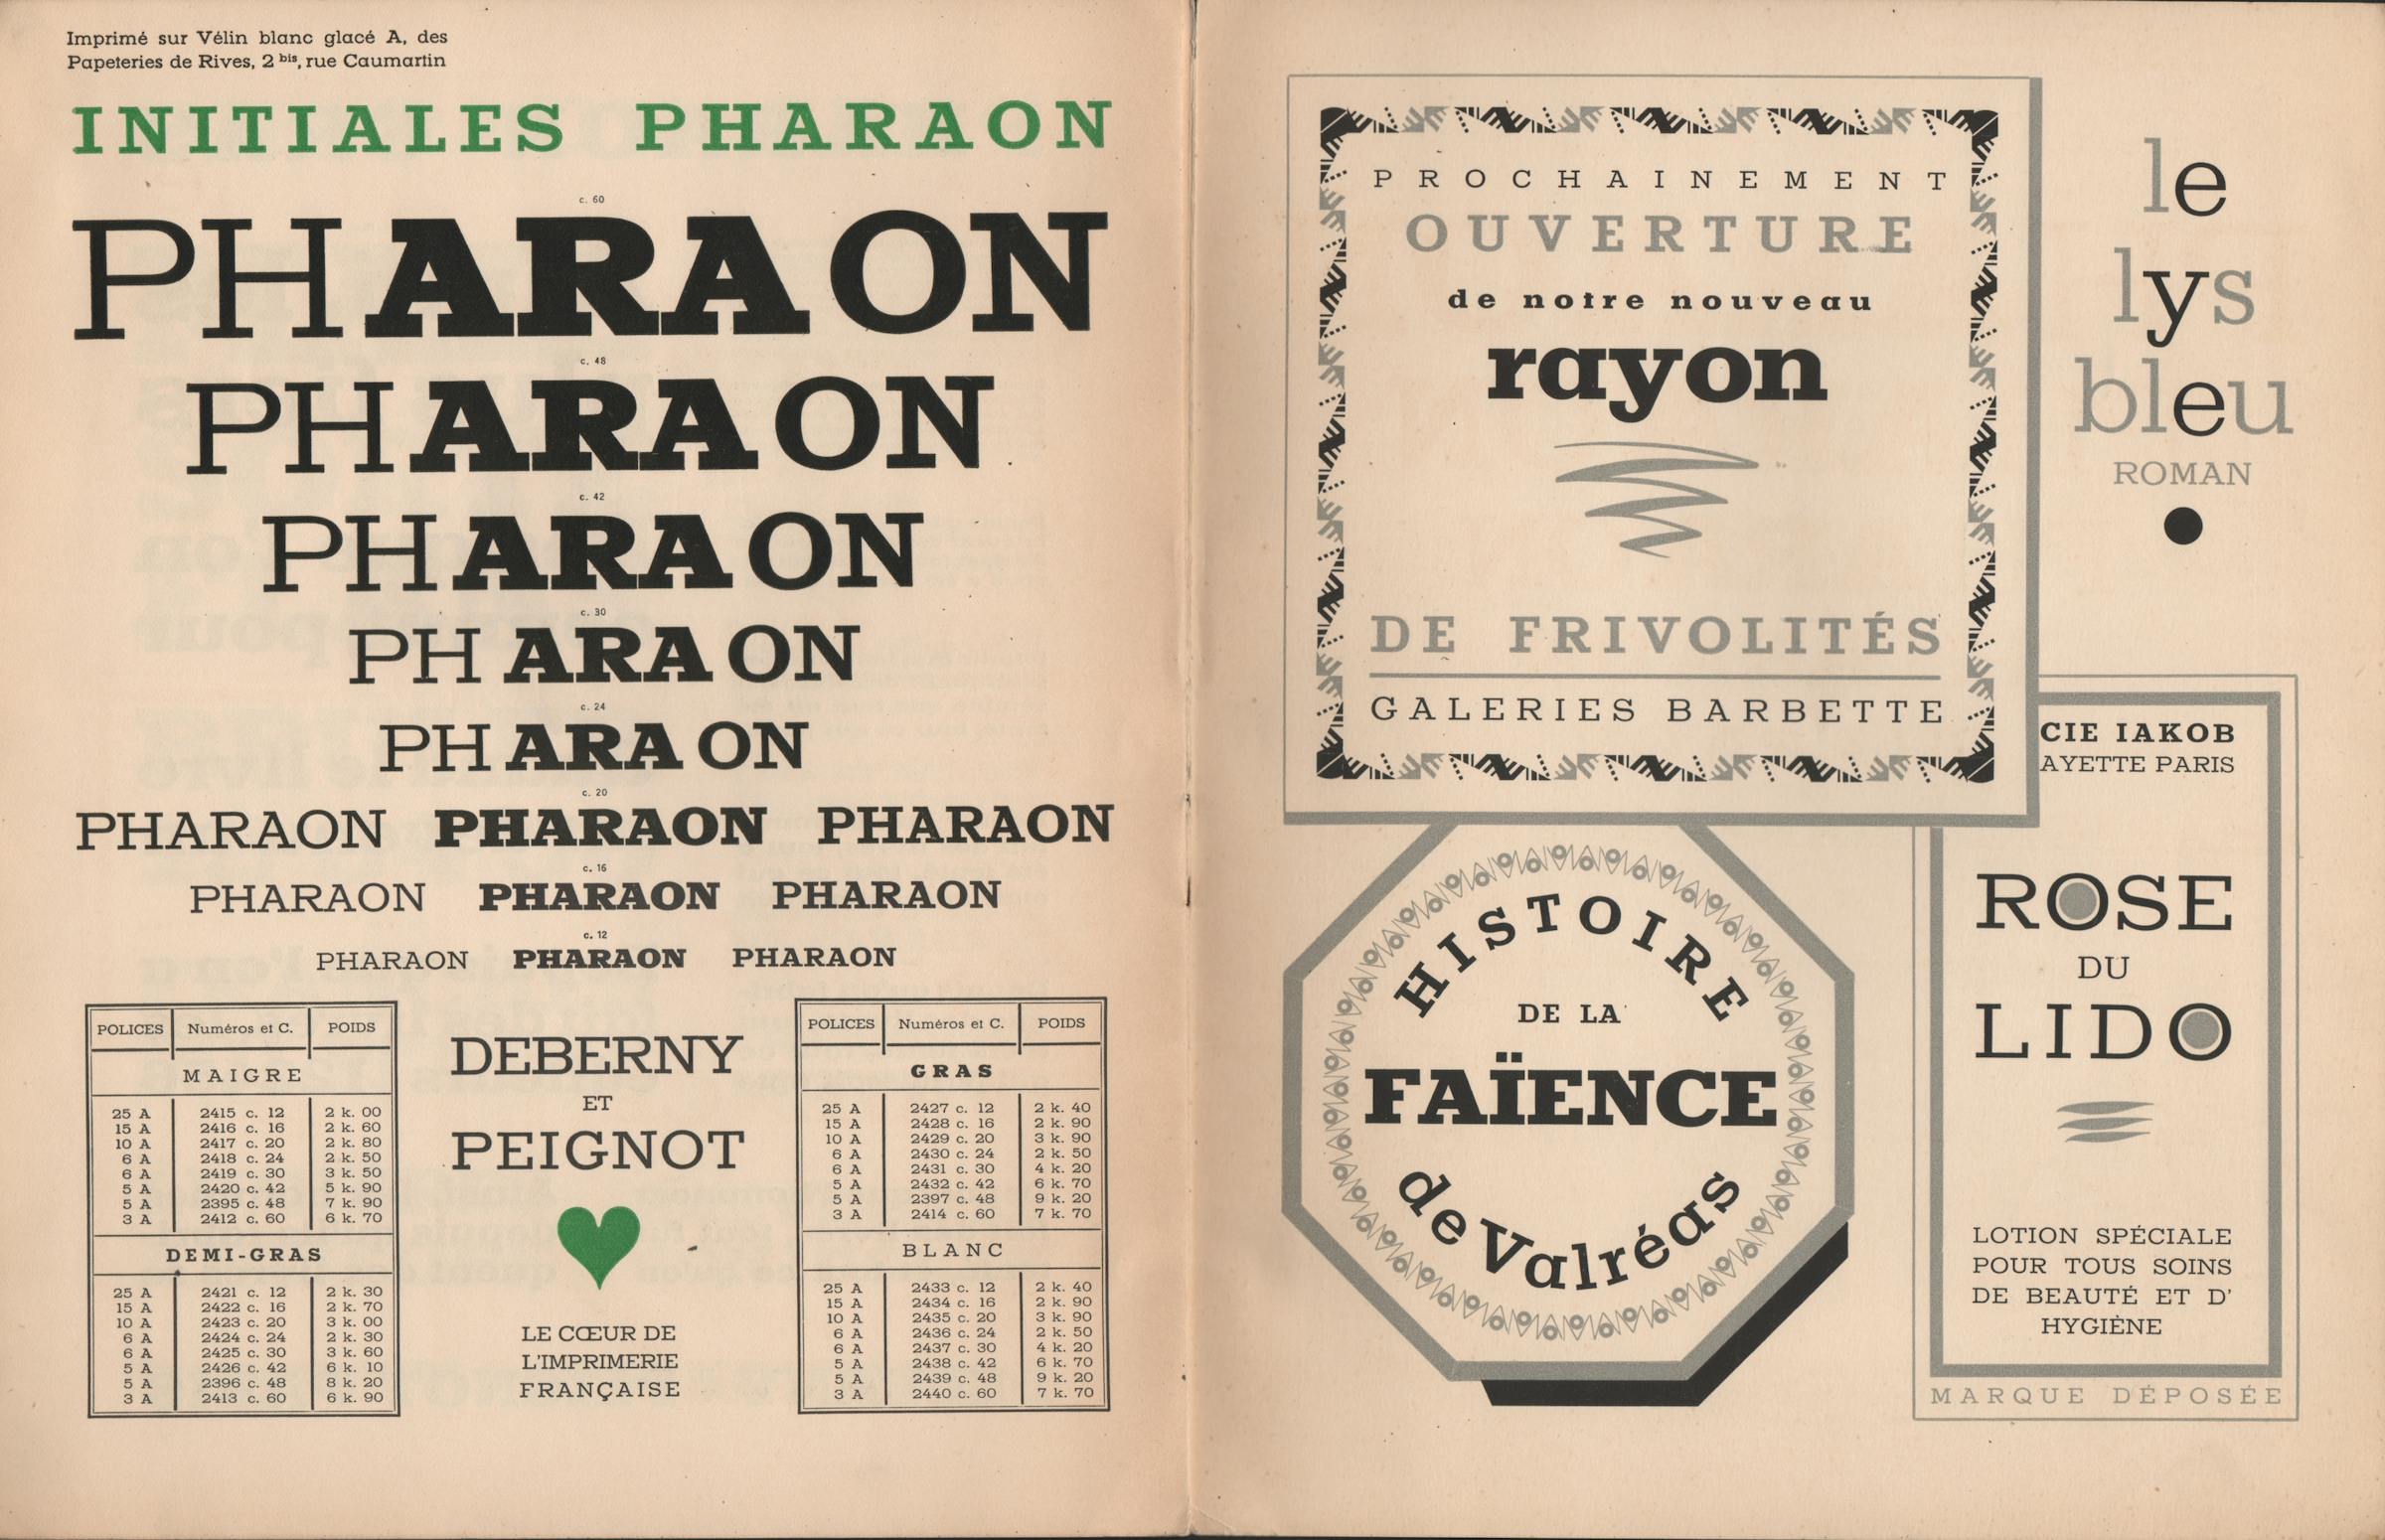 Deberny et Peignot’s “Pharaon”, 1932